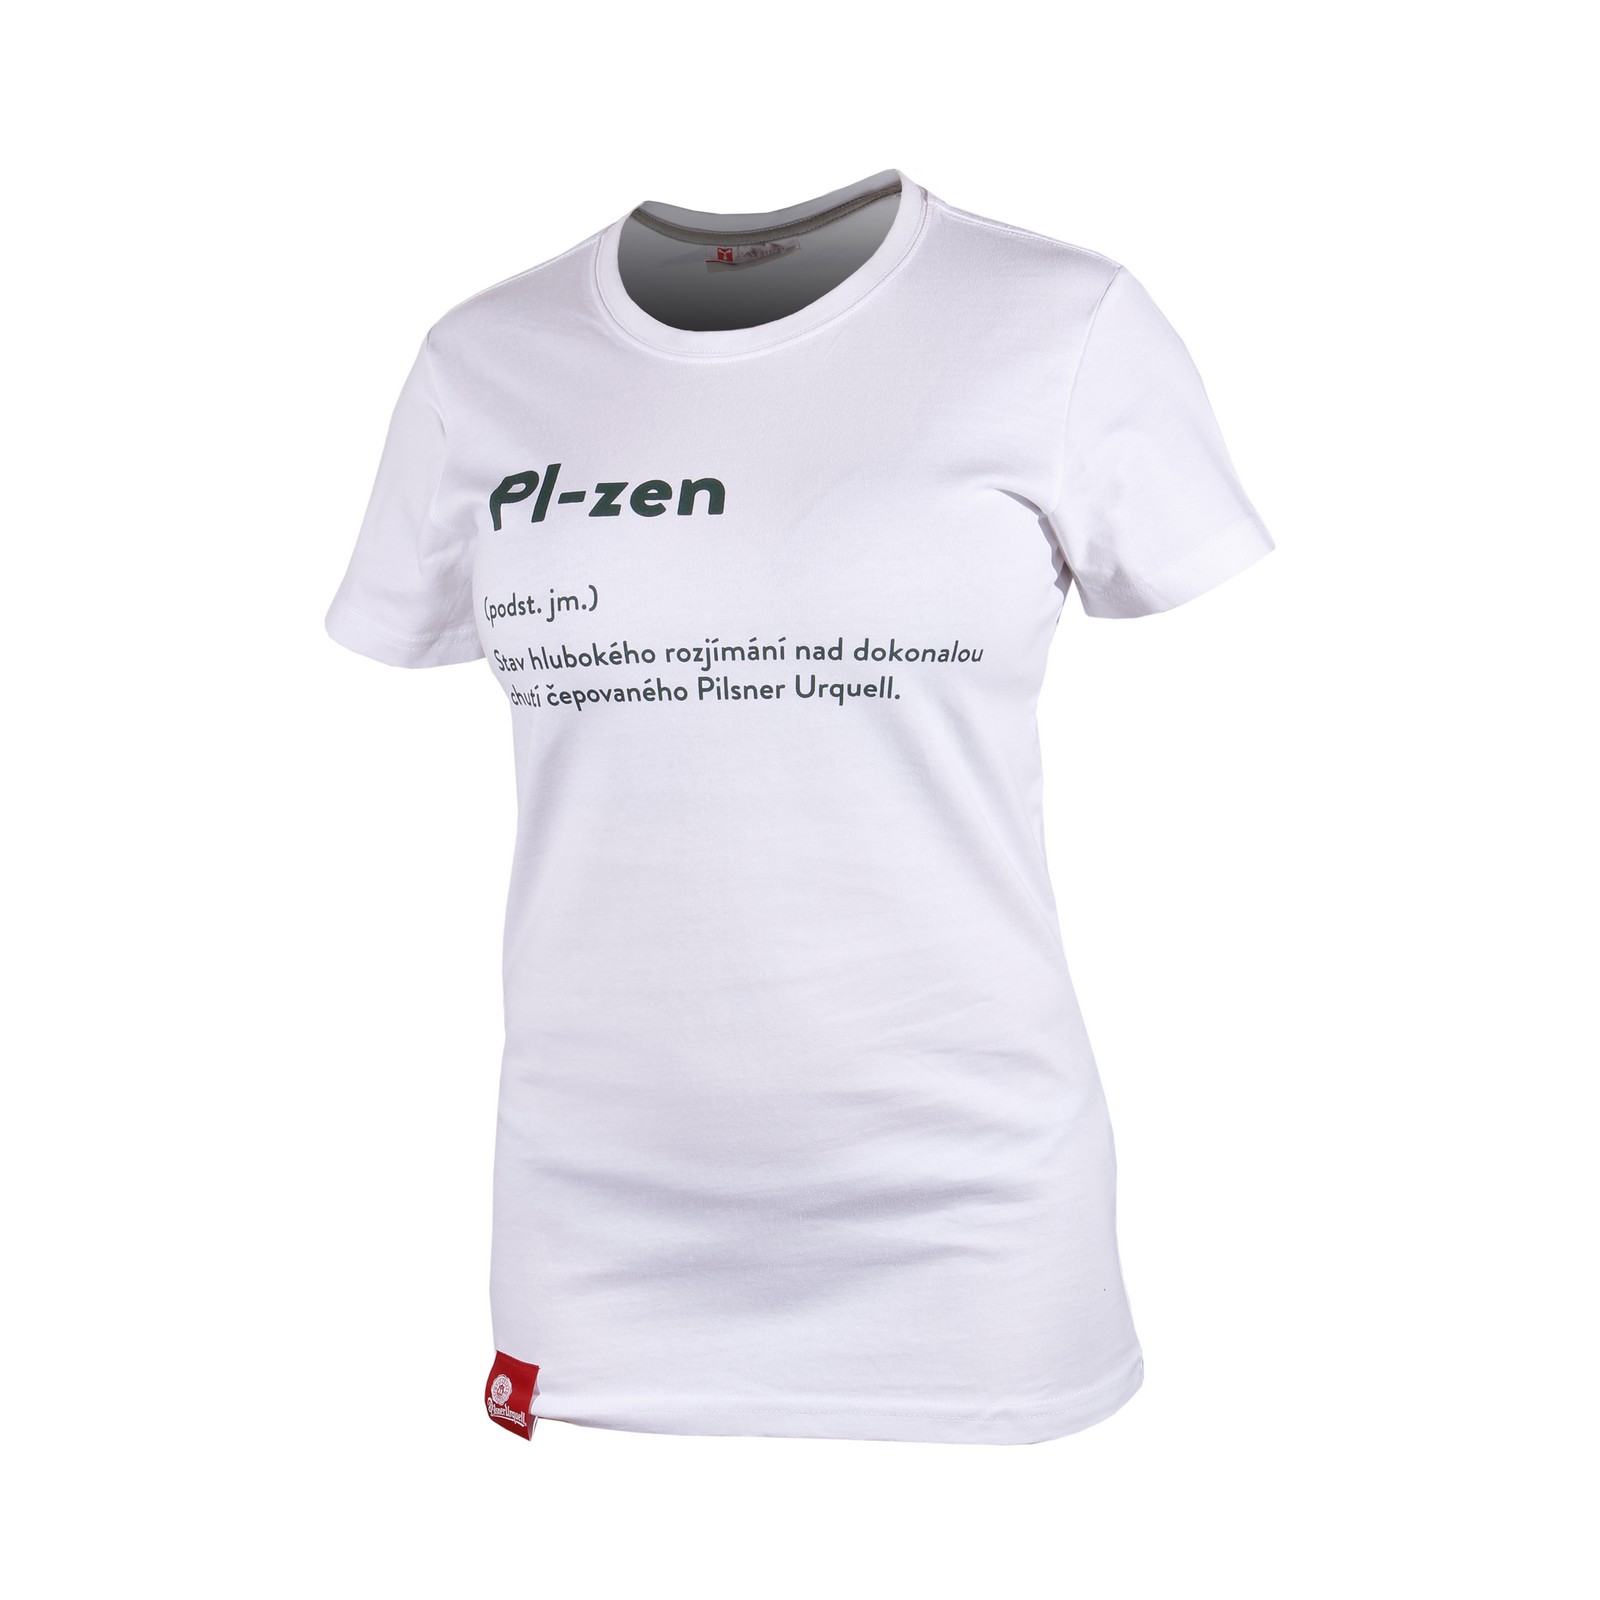 Frauen T-shirt Pilsner Urquell - Pl-zen